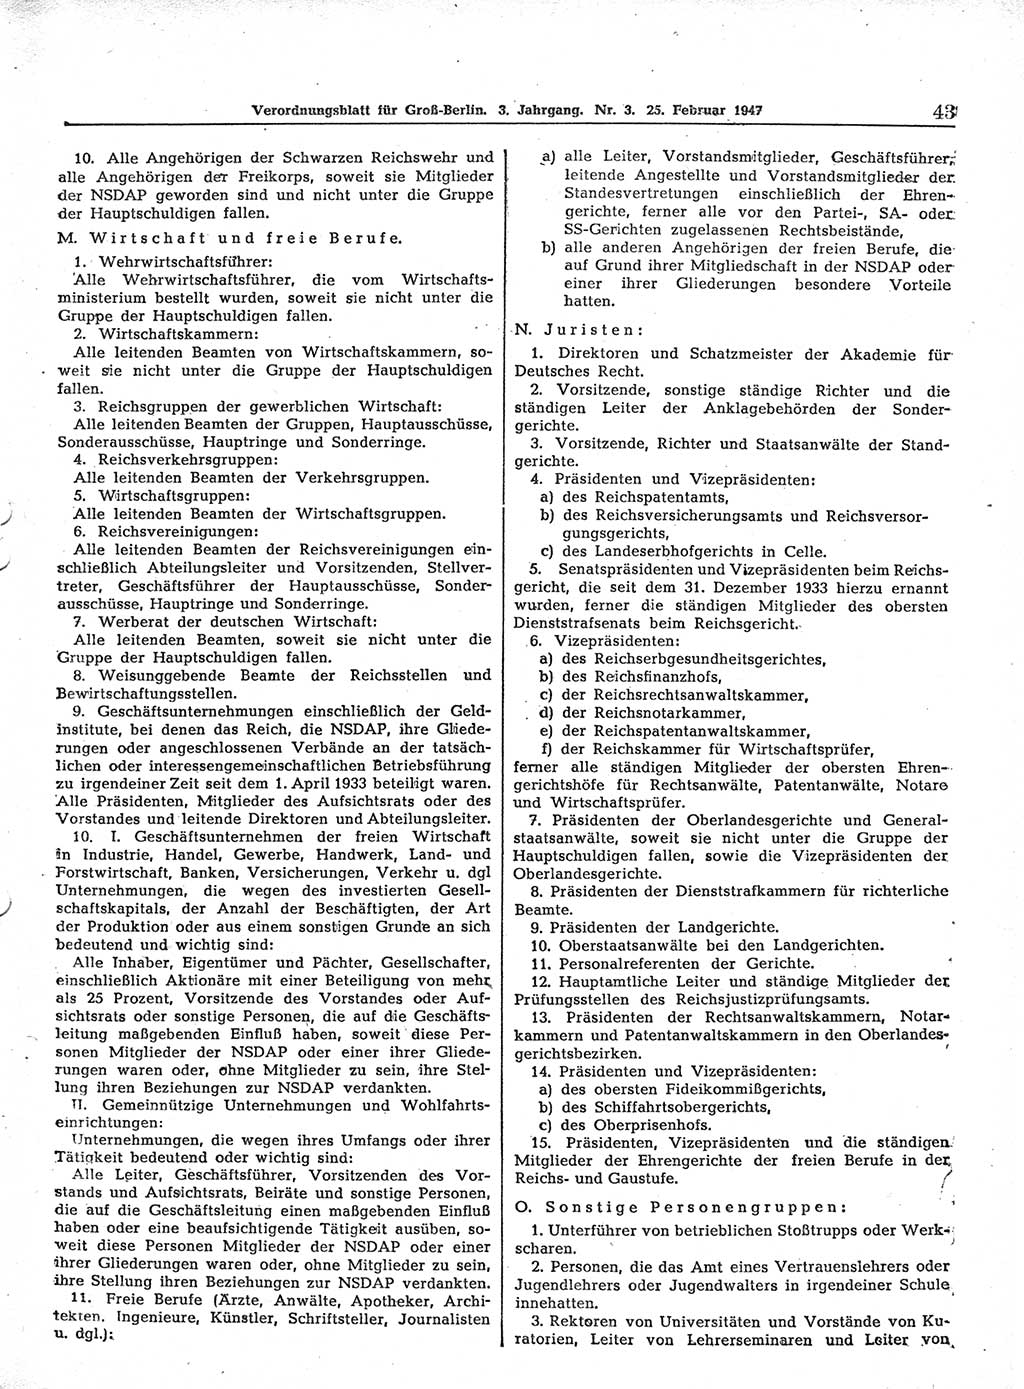 Verordnungsblatt (VOBl.) für Groß-Berlin 1947, Seite 43 (VOBl. Bln. 1947, S. 43)